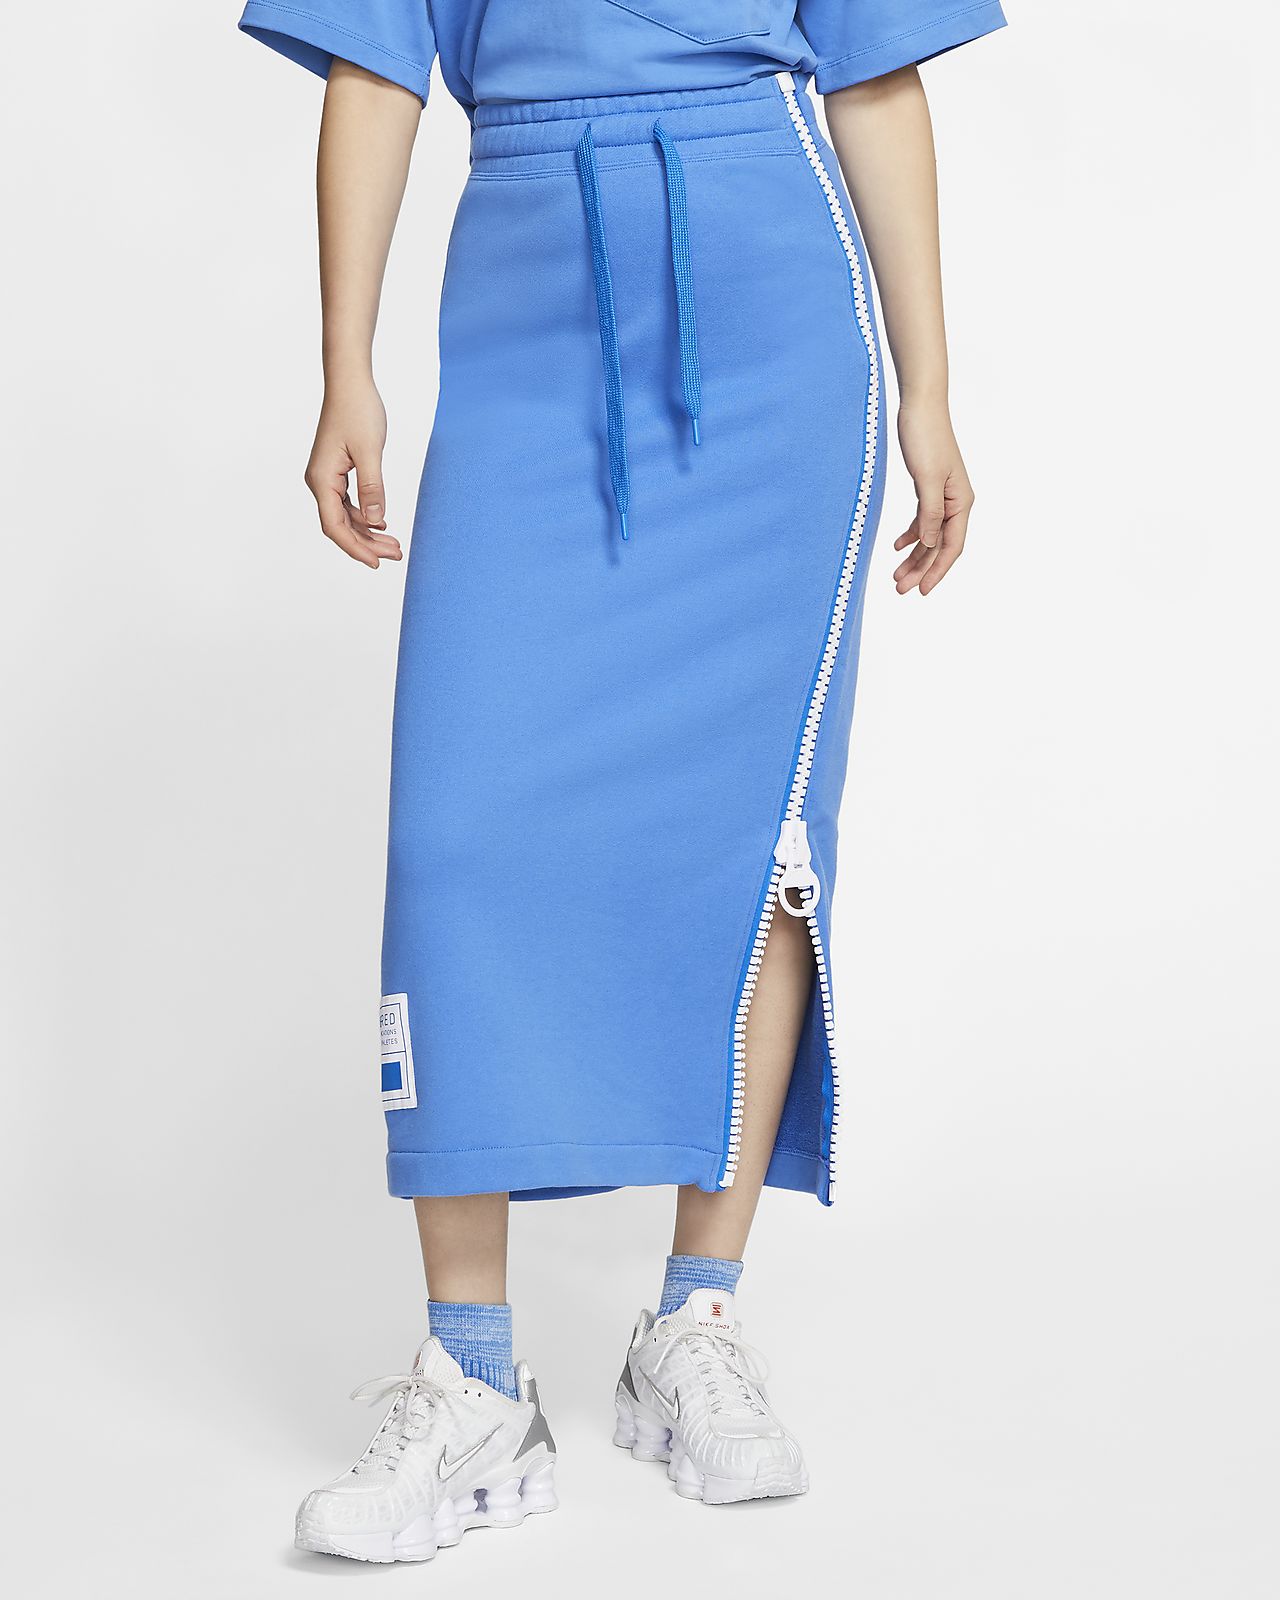 Nike Sportswear NSW Women's Fleece Skirt. Nike ID